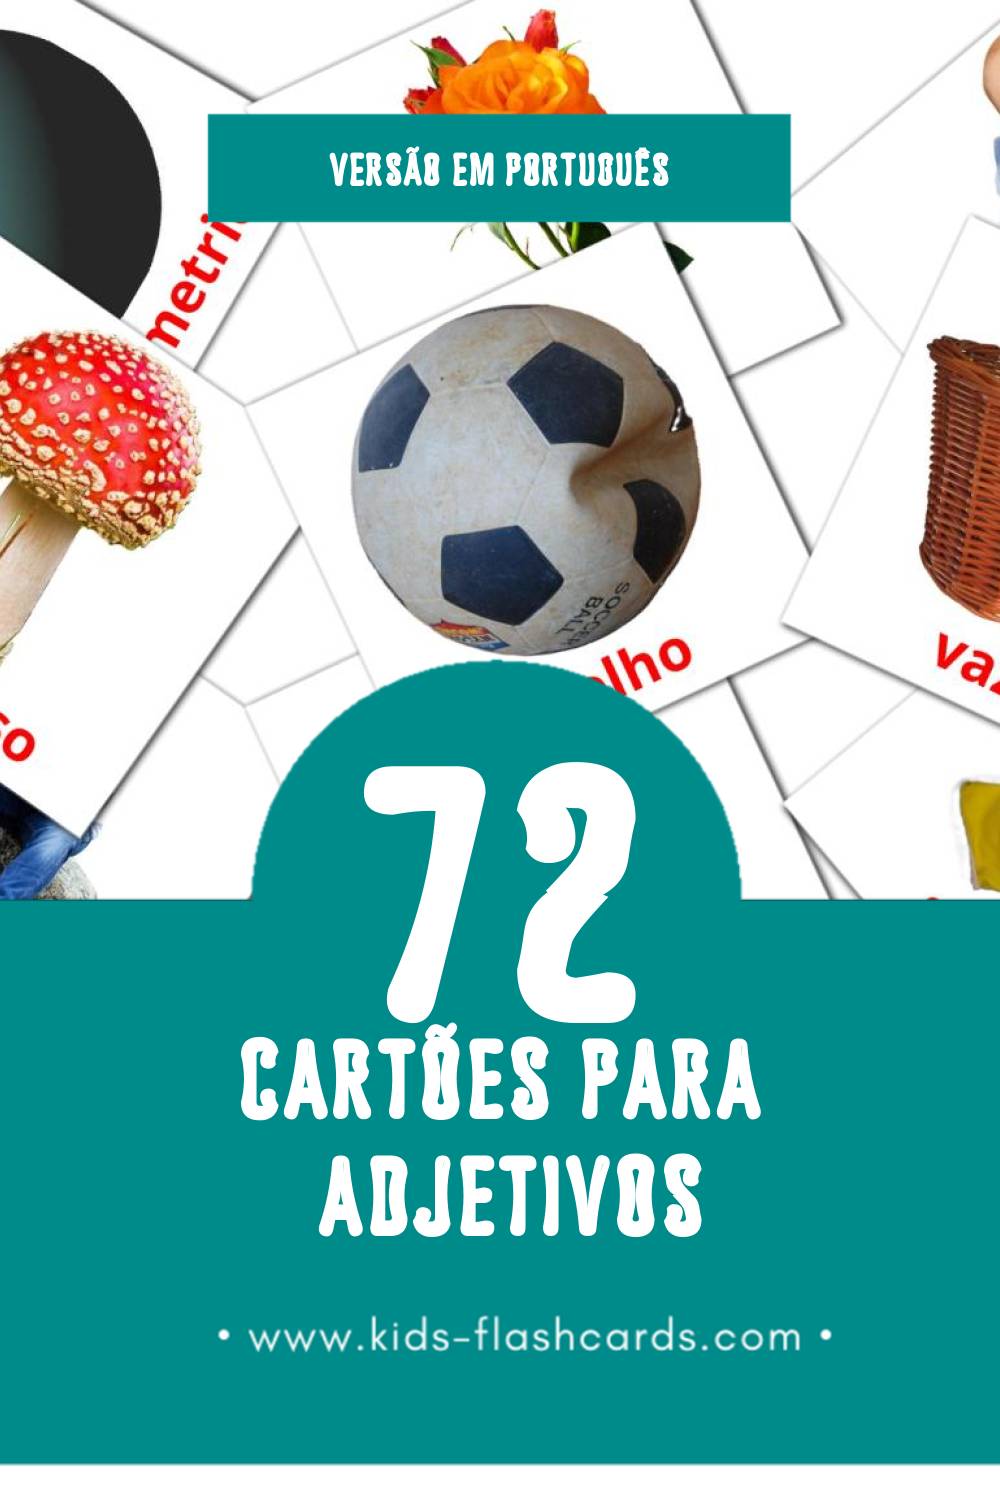 Flashcards de Adjetivos Visuais para Toddlers (72 cartões em Português)